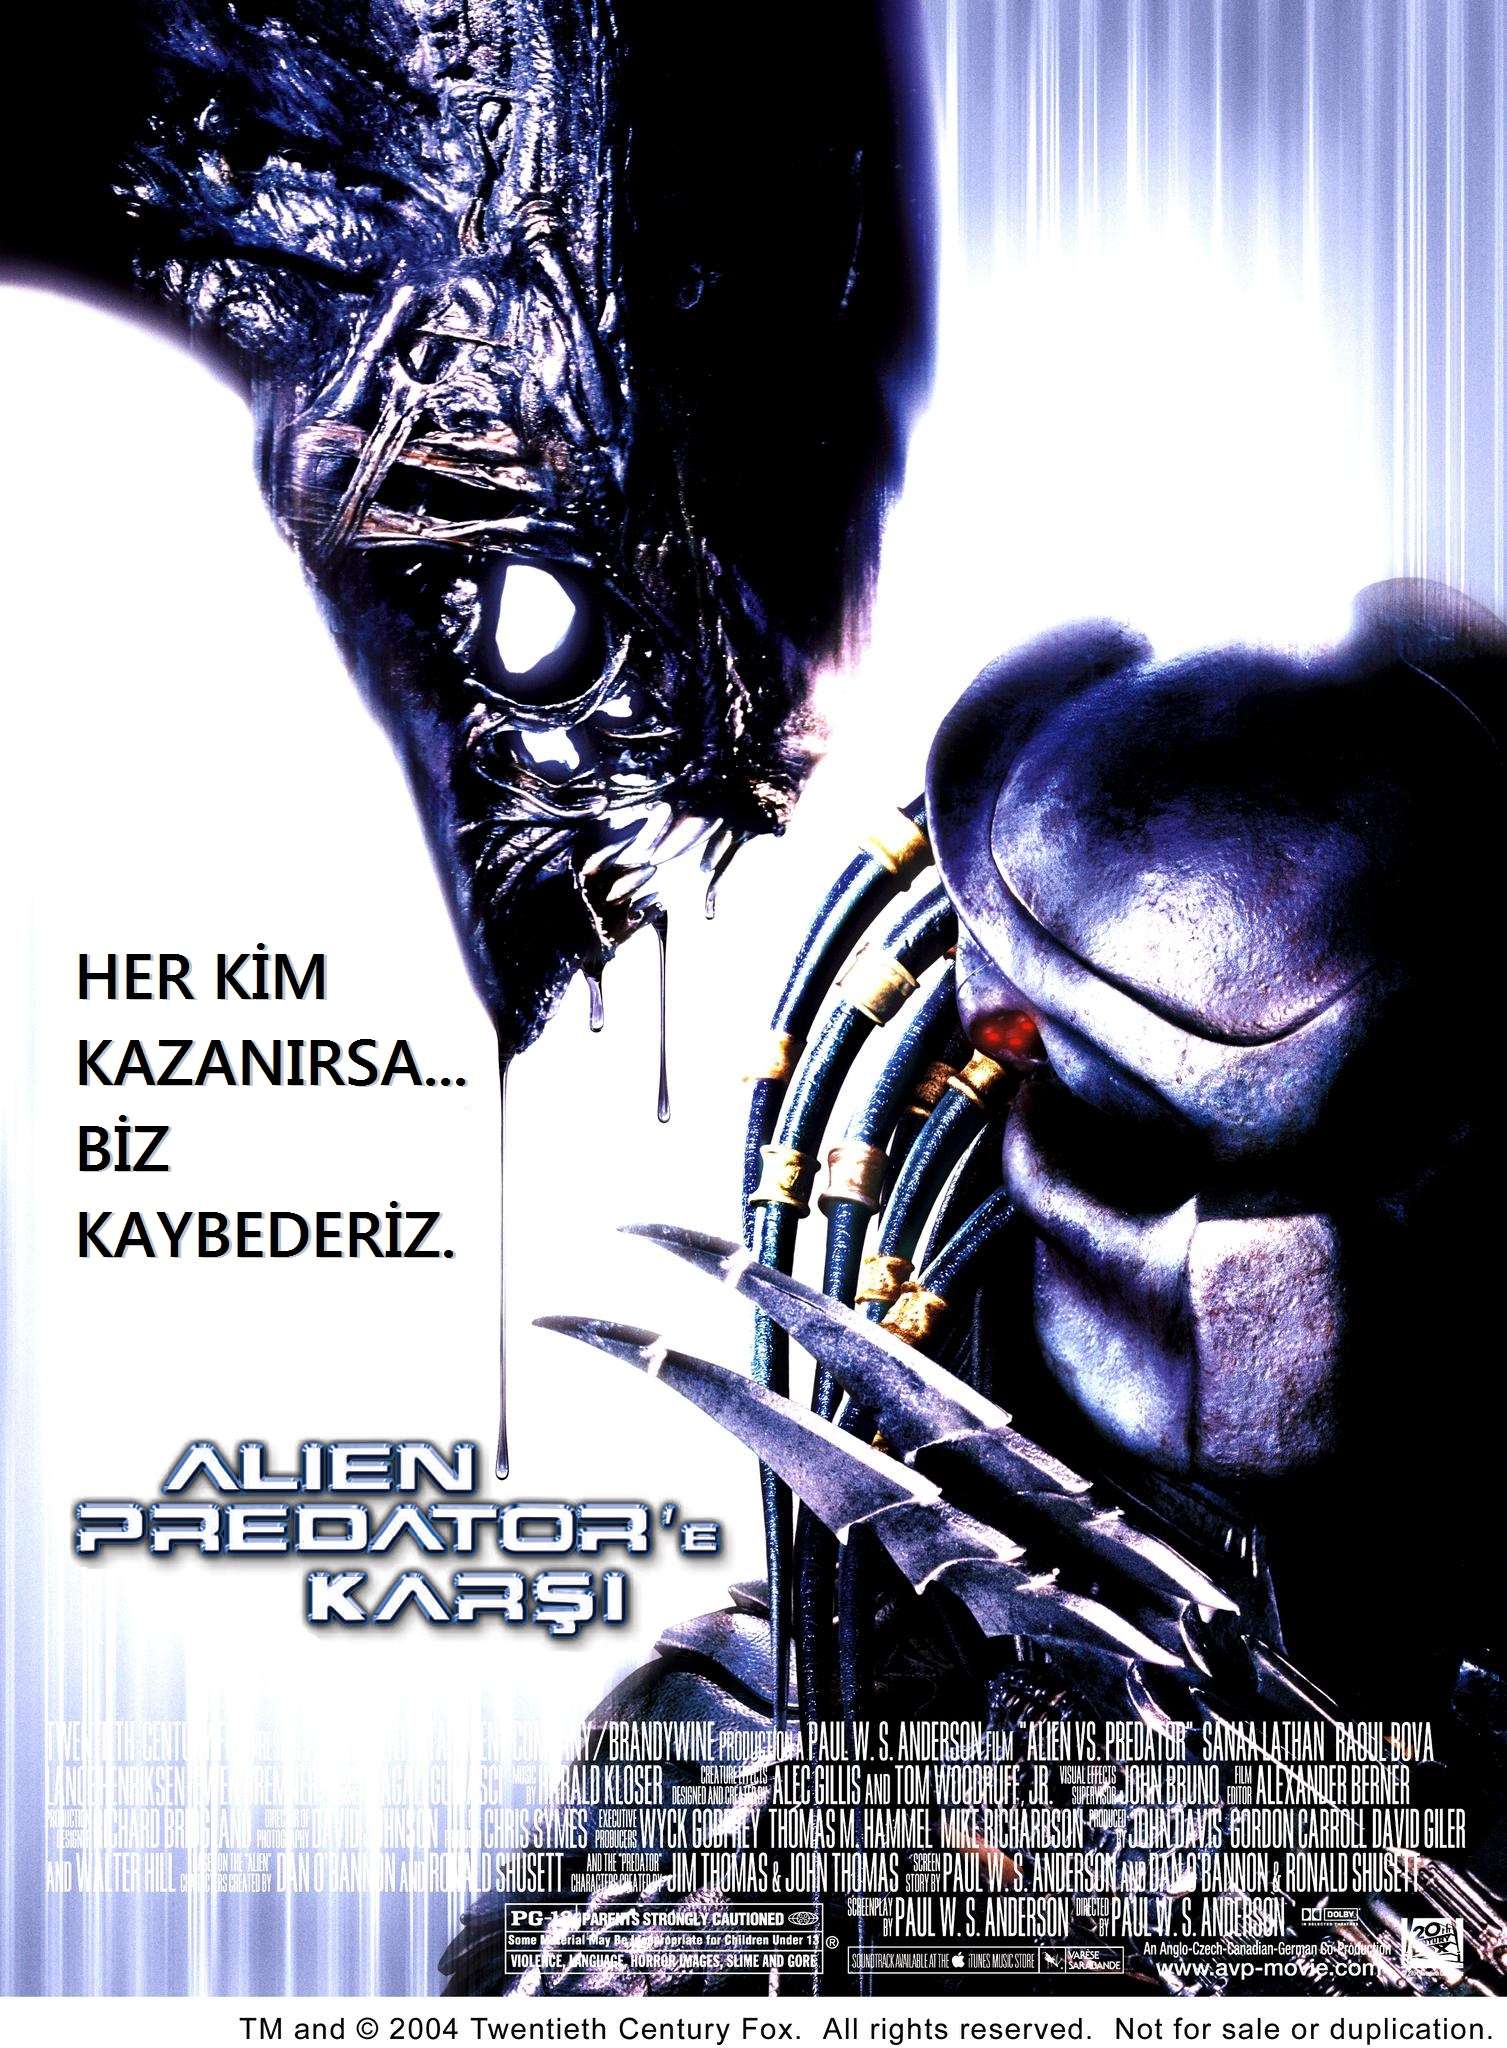 Alien Predator'e Karşı - 2004 Türkçe Dublaj 480p BRRip Tek Link indir